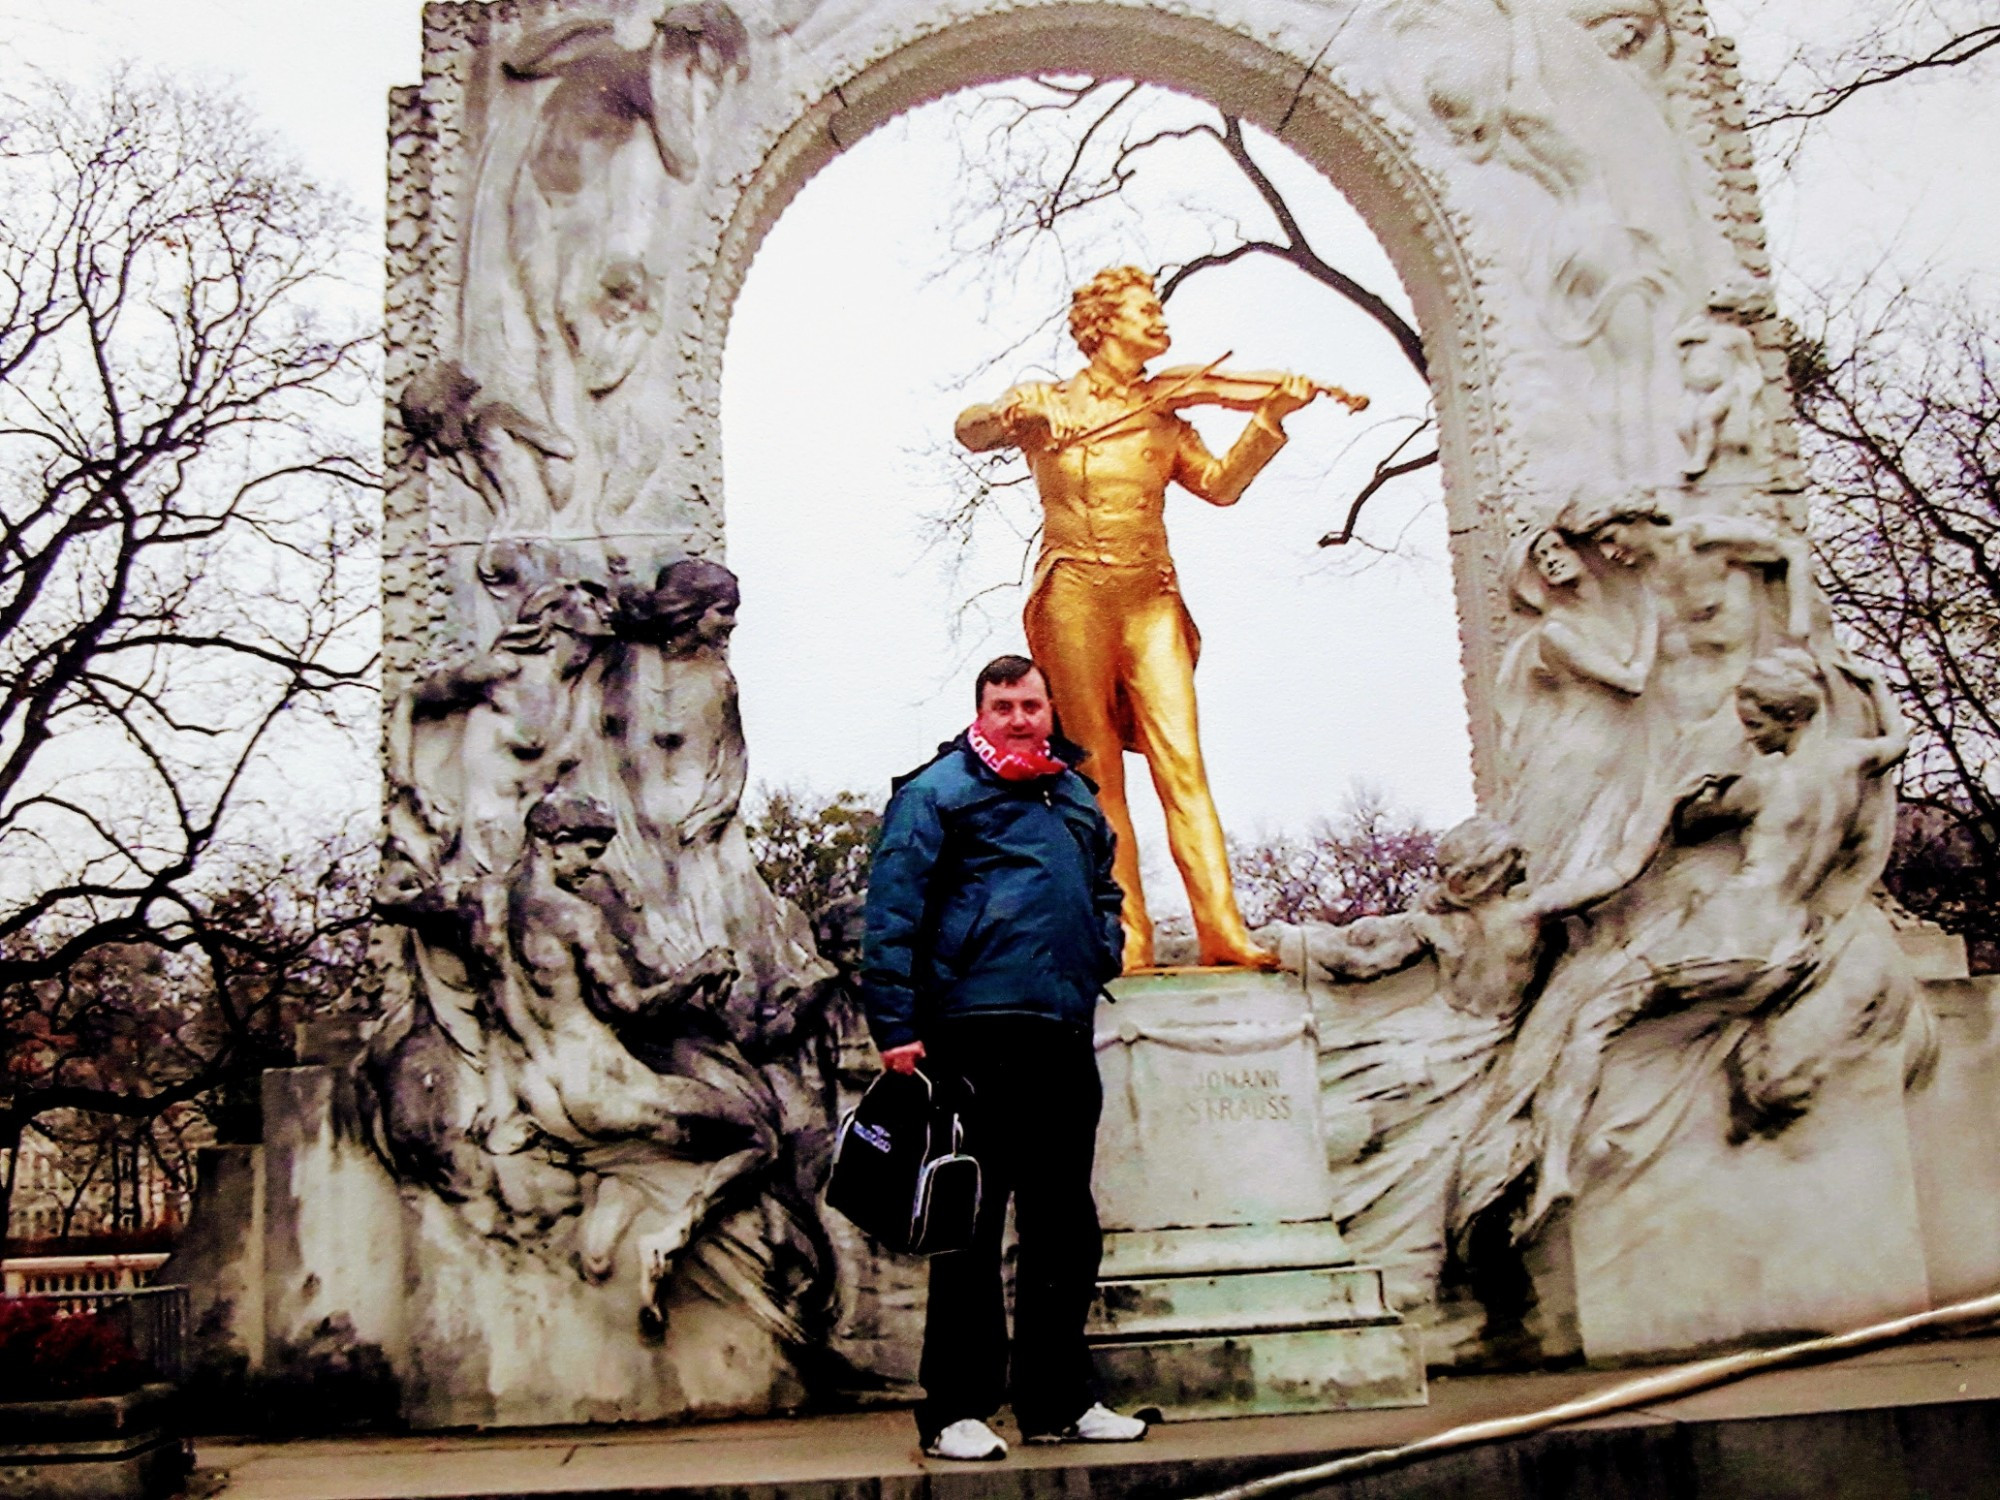 Johann Strauss monument, Vienna